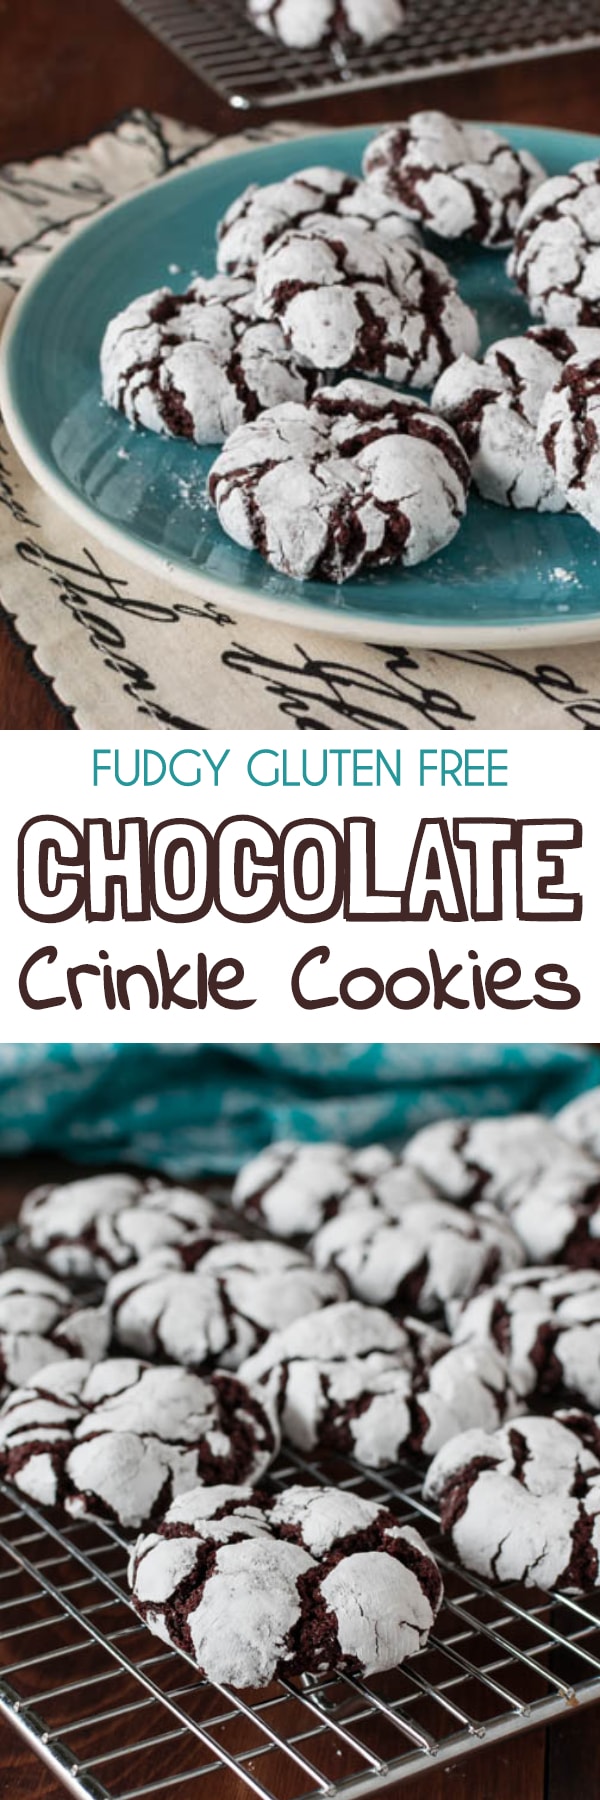 Fudgy Gluten Free Chocolate Crinkle Cookies